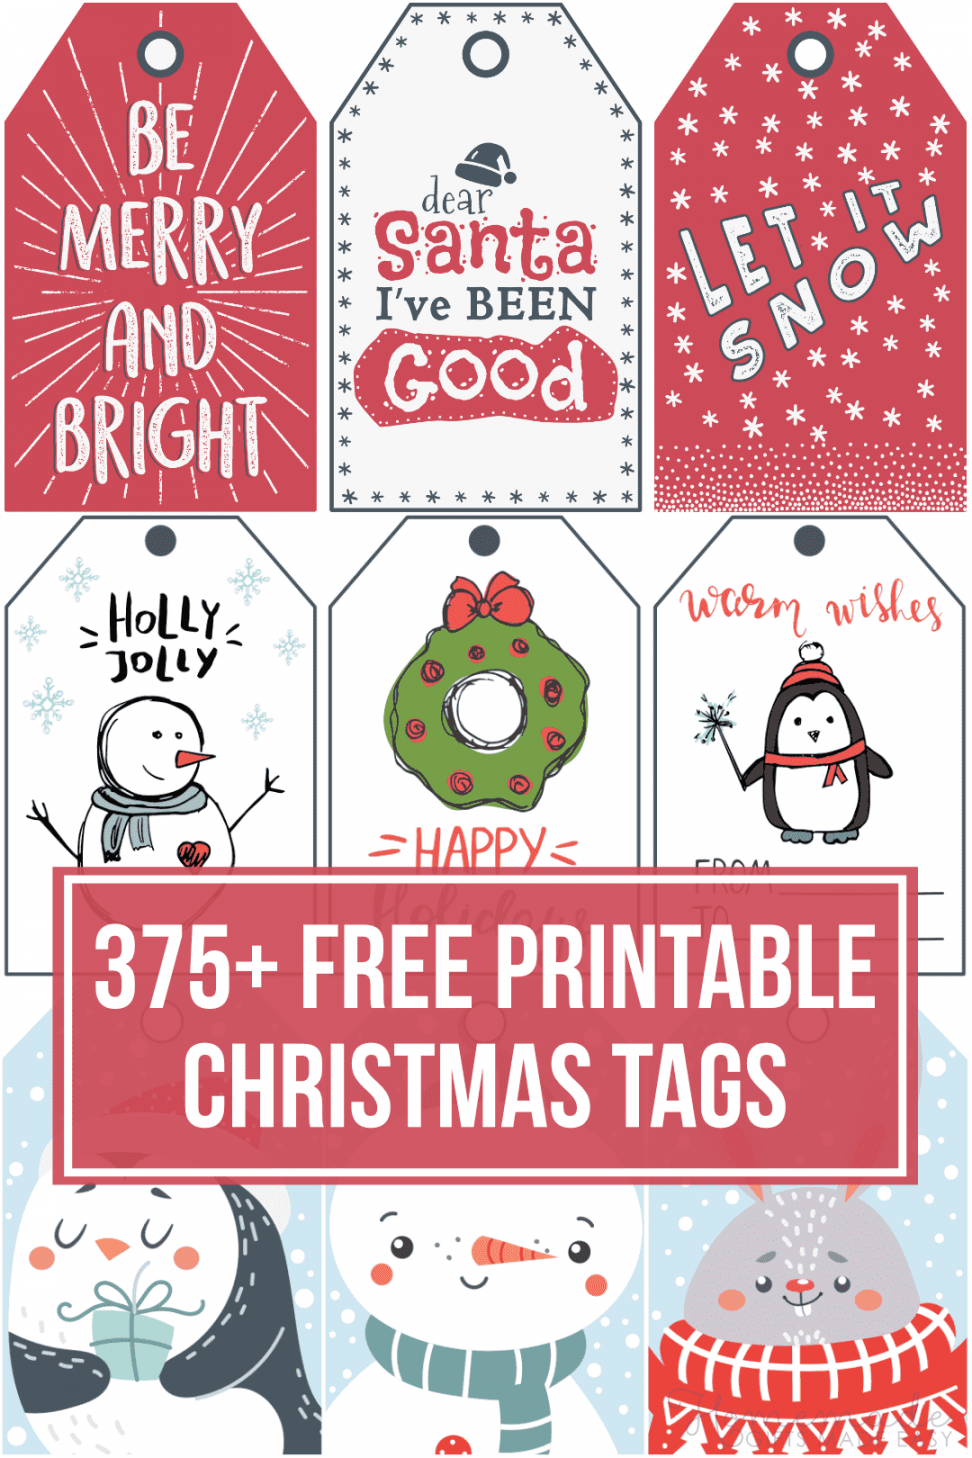 + Free Printable Christmas Tags for your Holiday Gifts - FREE Printables - Free Christmas Tags Printable